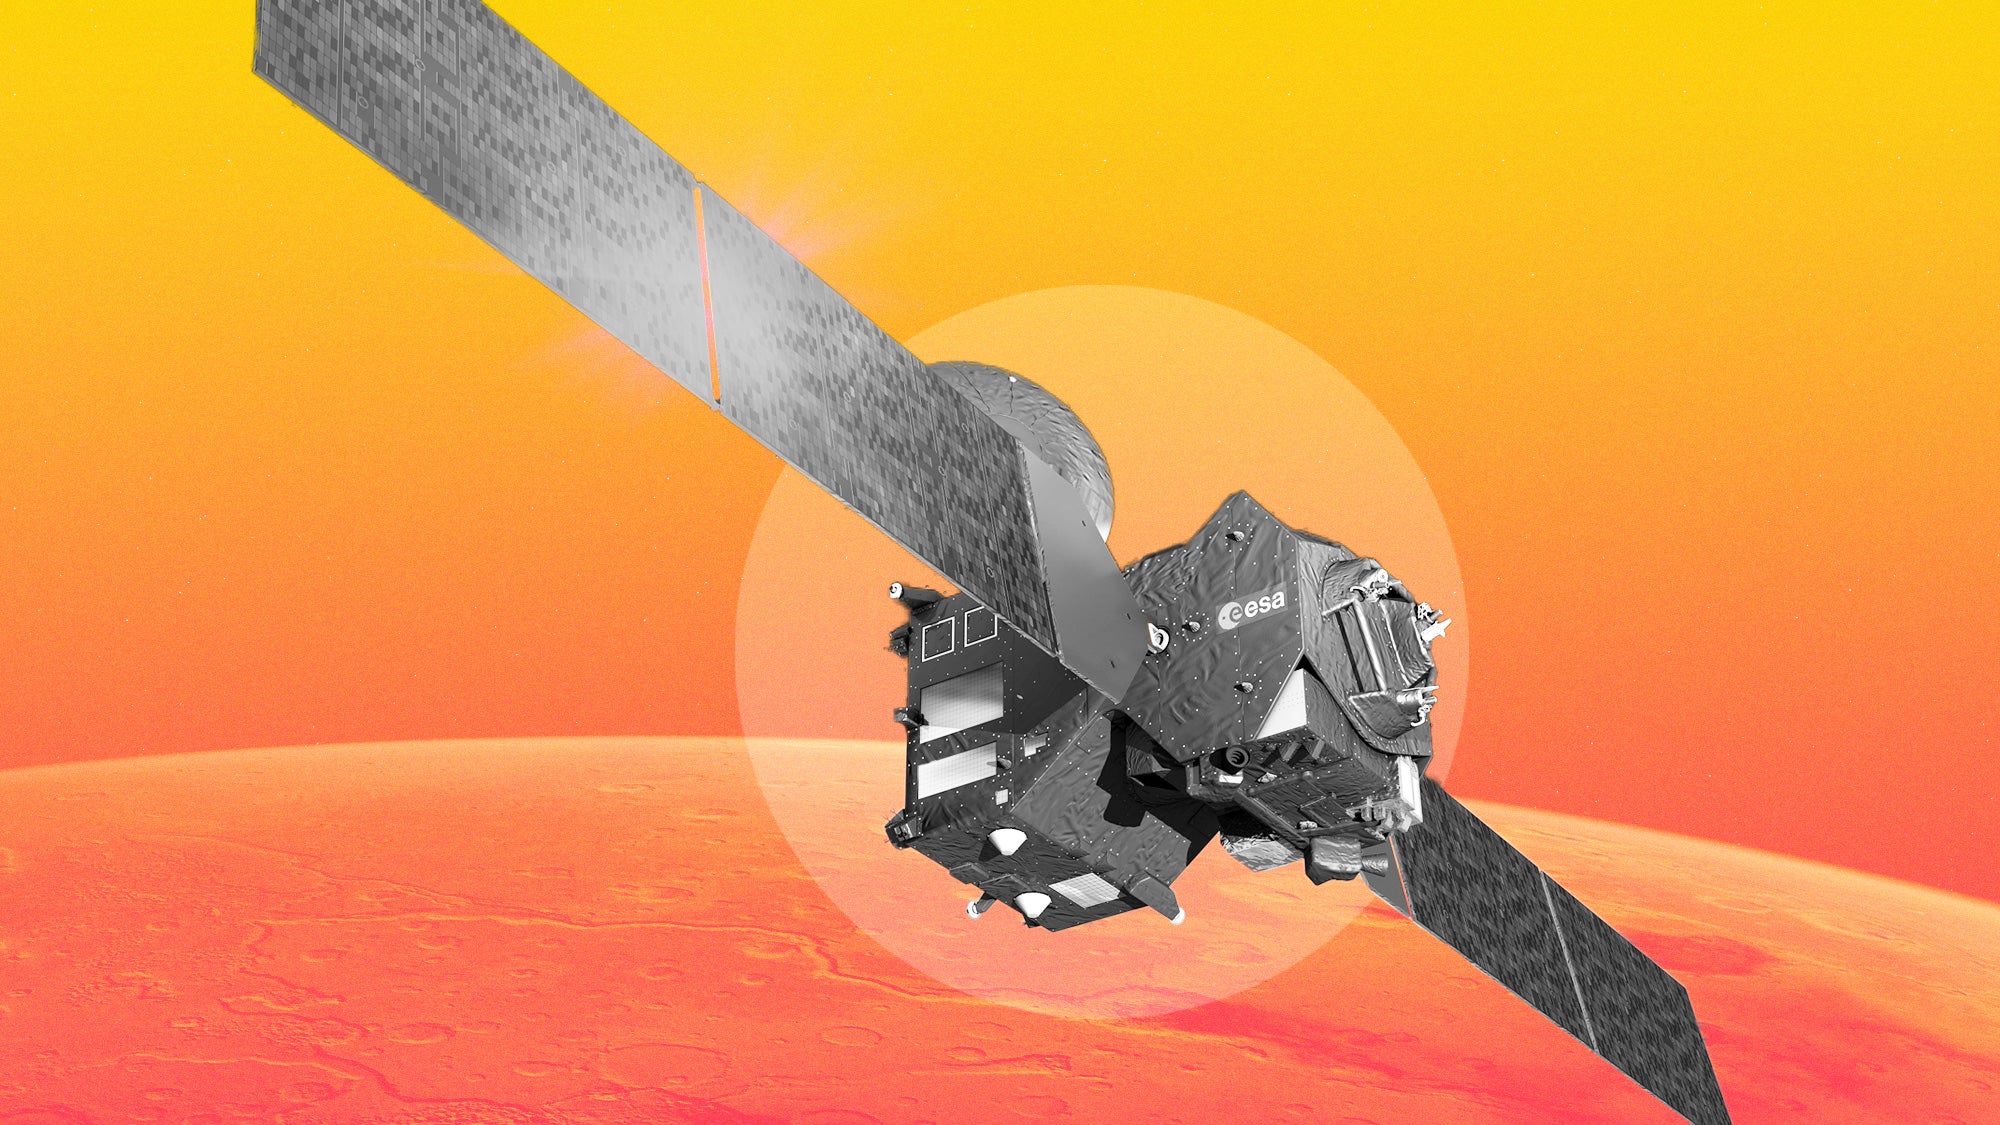 ExoMars Trace Gas Orbiter shown on Mars background